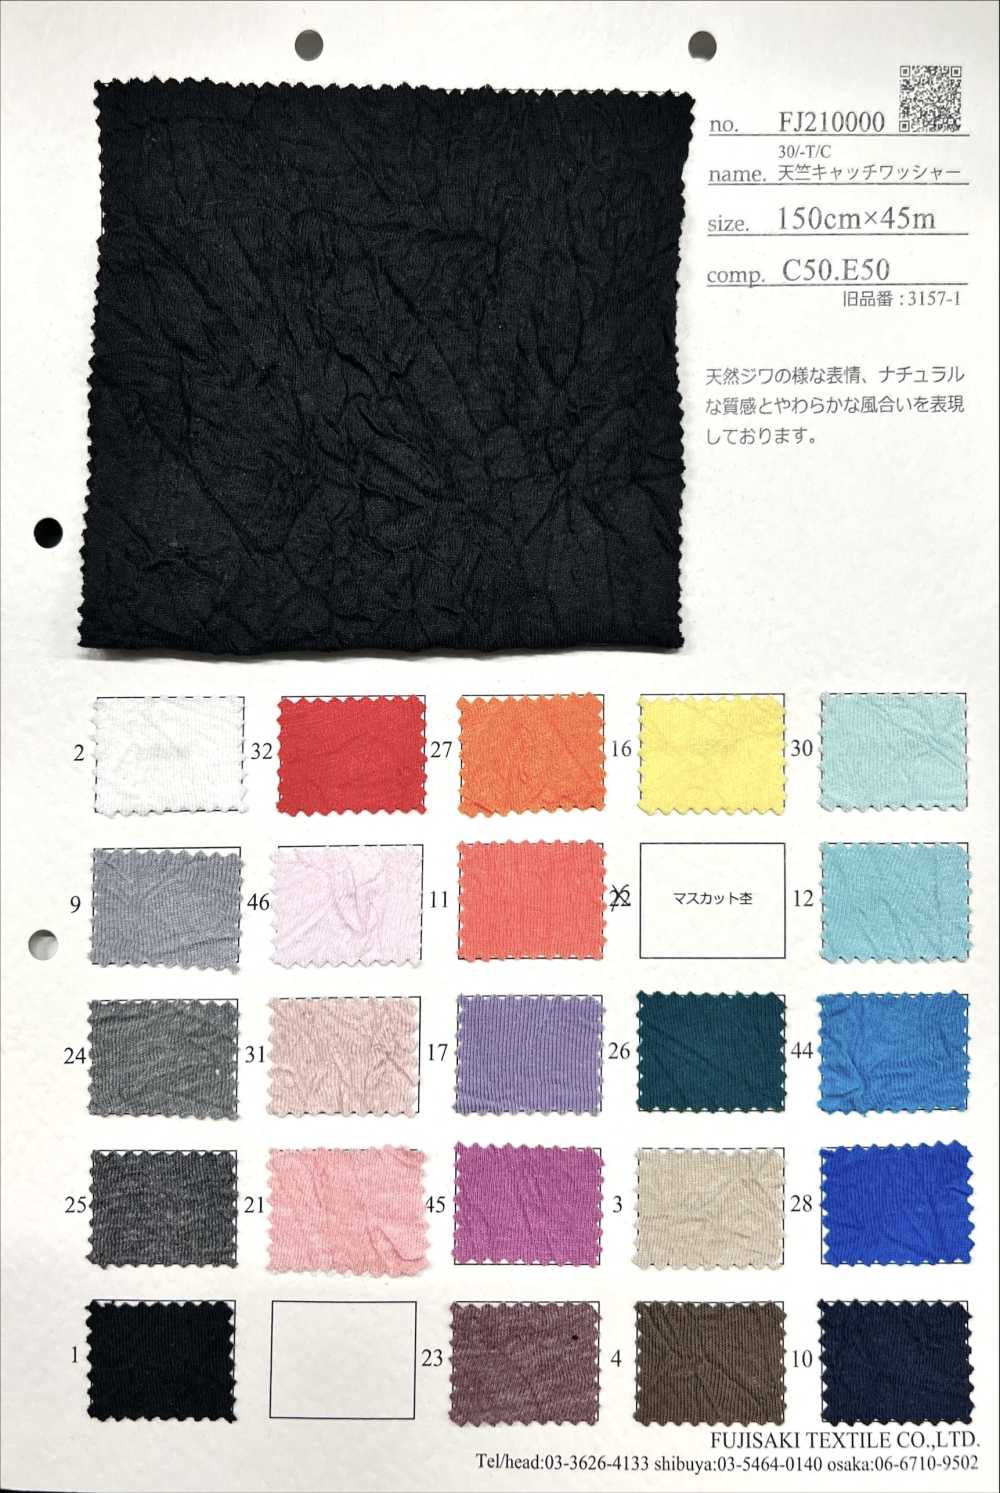 FJ210000 30/-T/C豚平針織物鎖緊水洗加工[面料] Fujisaki Textile